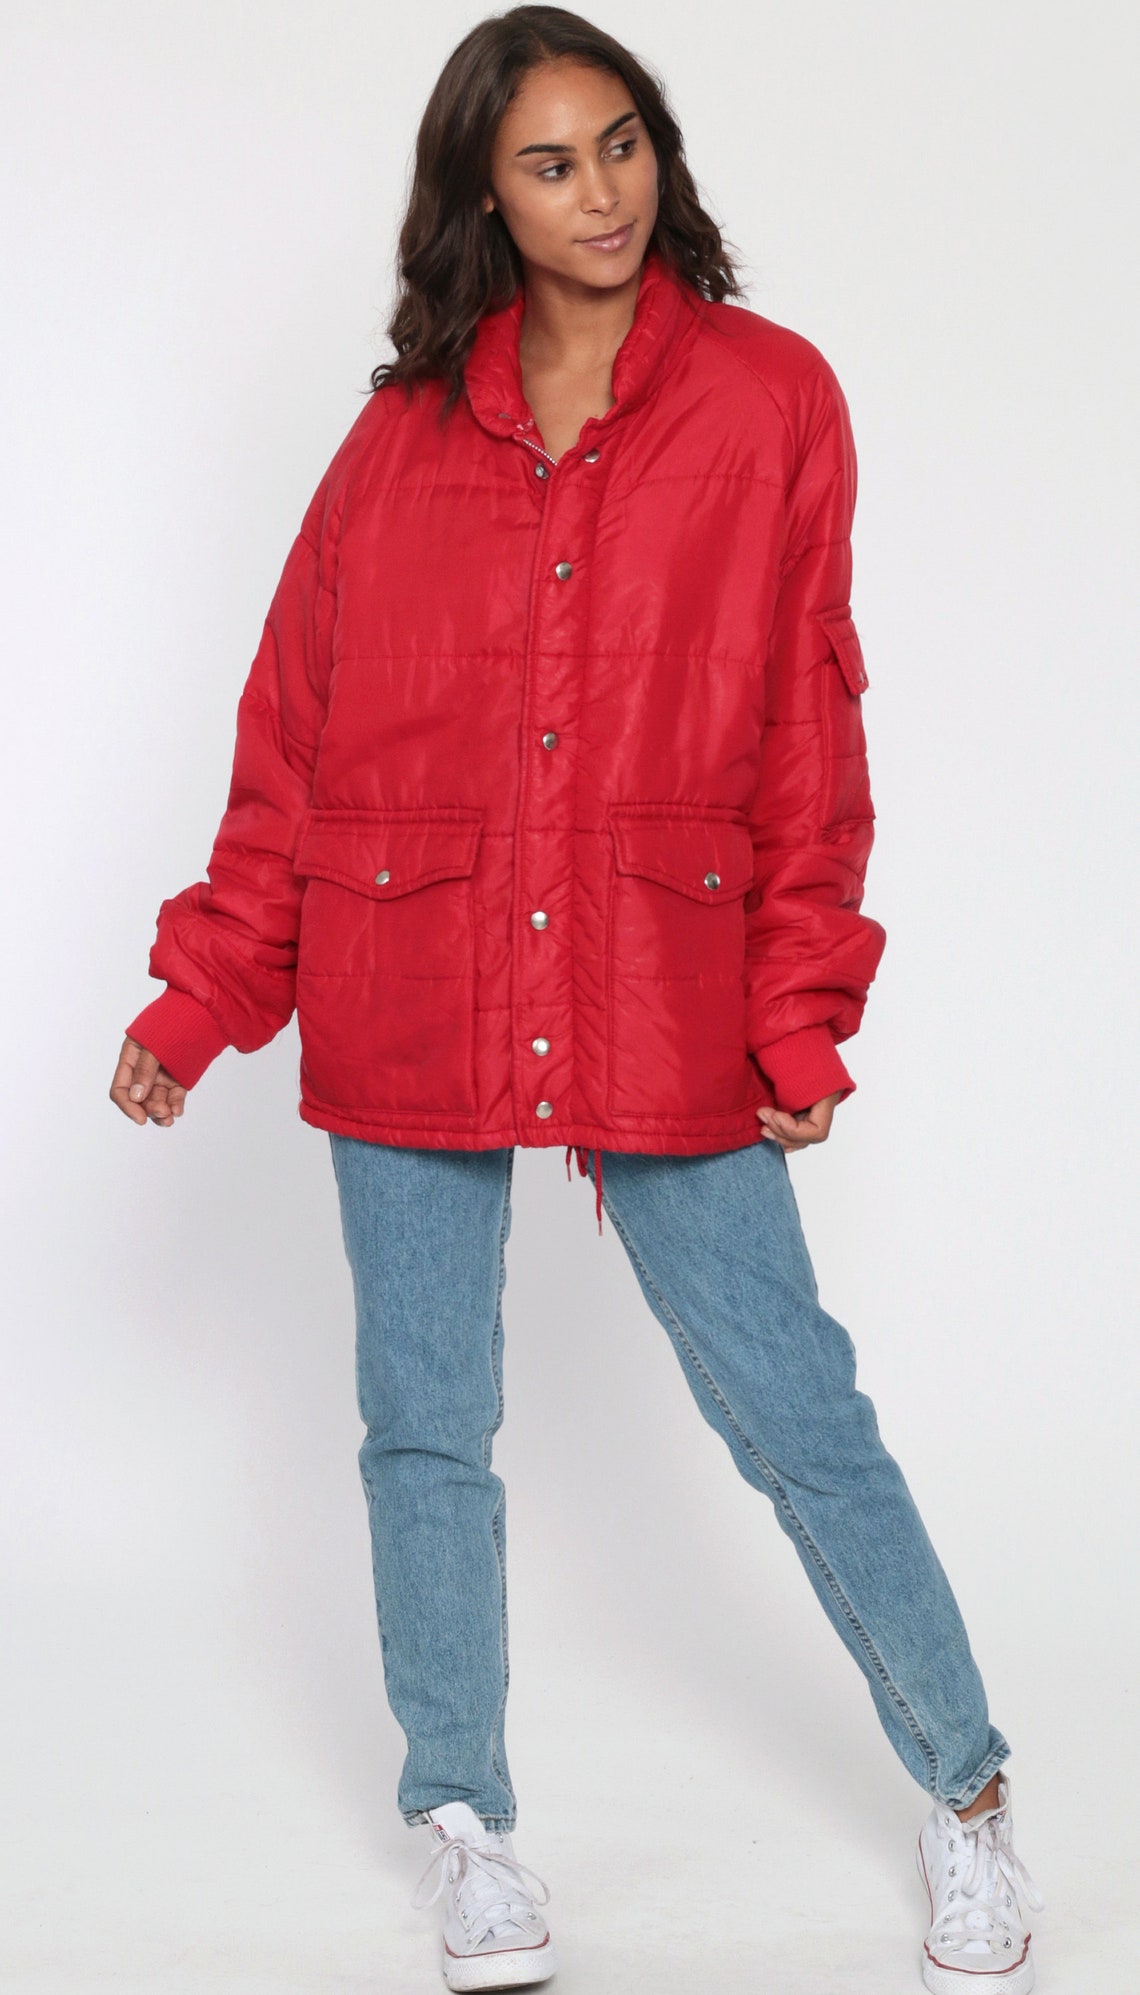 Puffy Jacket 70s Retro Red Ski Jacket 80s Puffer Coat Warm - Etsy